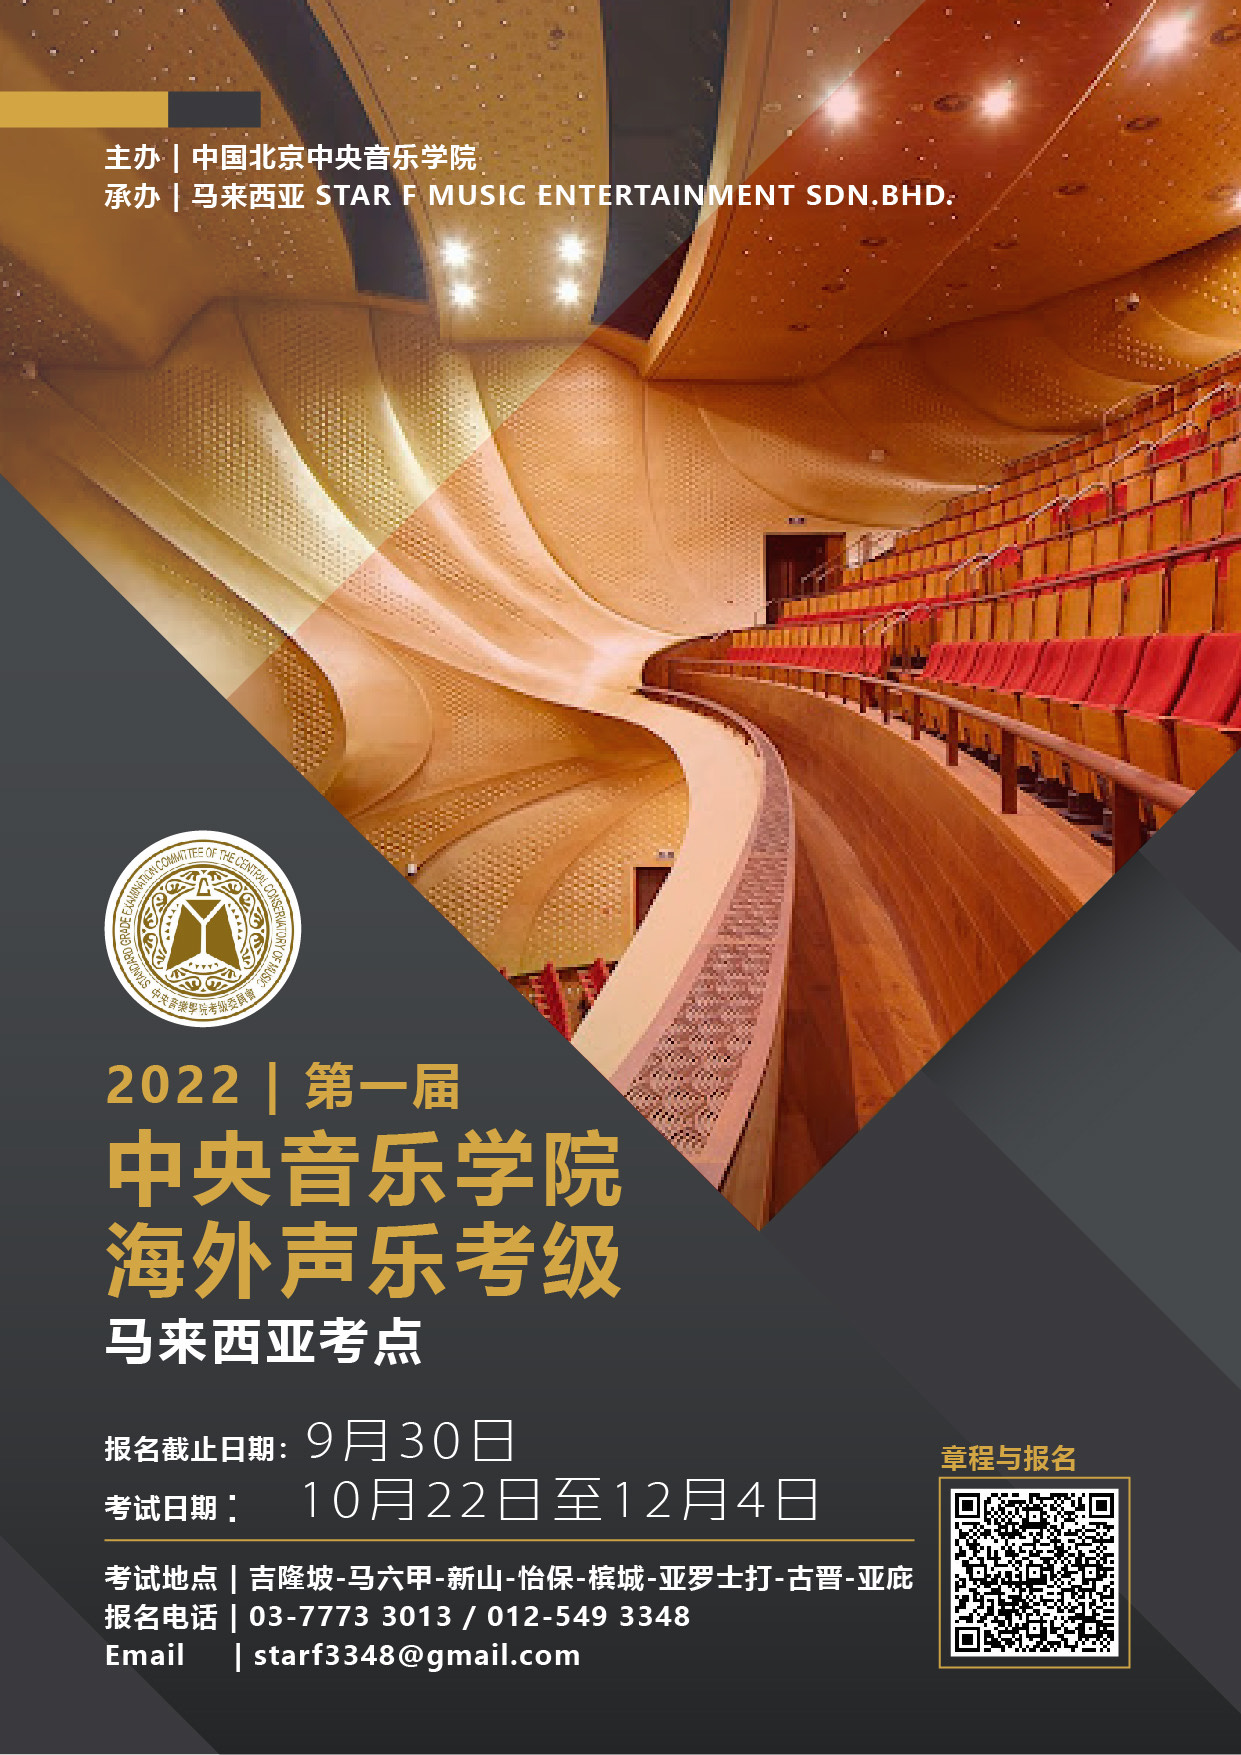 2022第一届中央音乐学院海外声乐考级欢迎报名参加